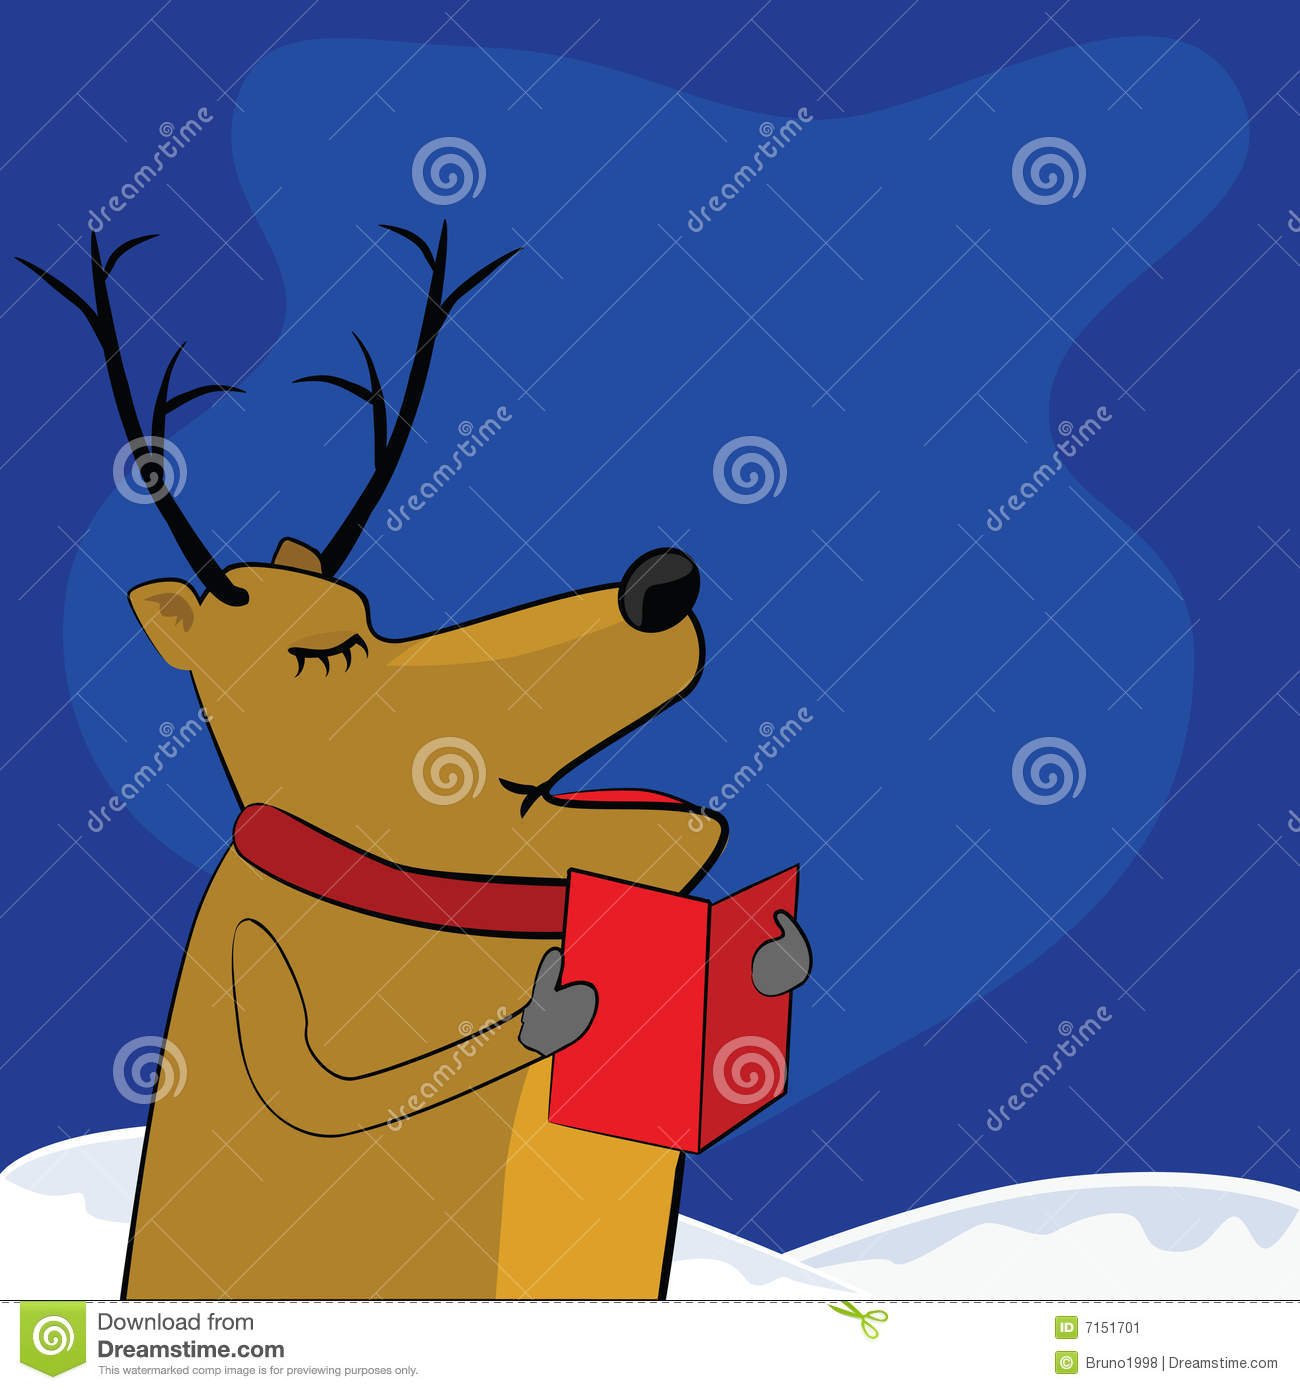 Singing Reindeer Stock Image   Image  7151701